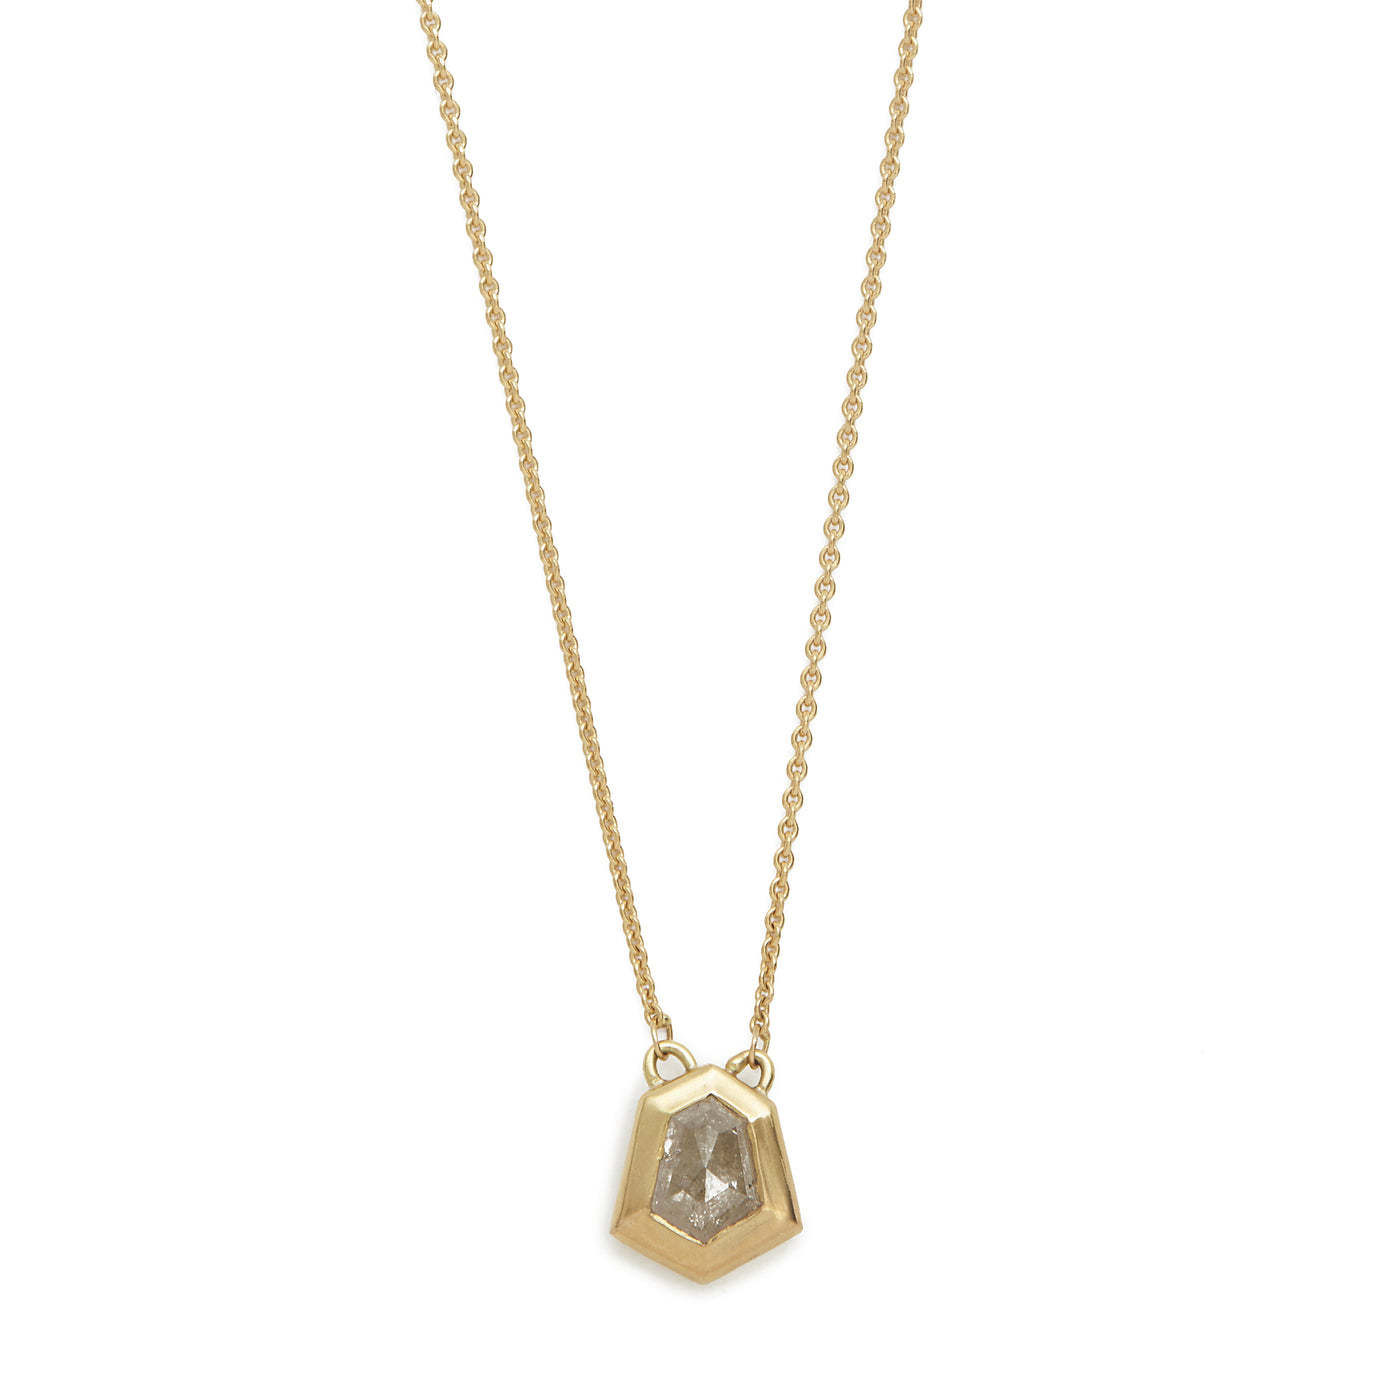 stormy diamond shape necklace #3